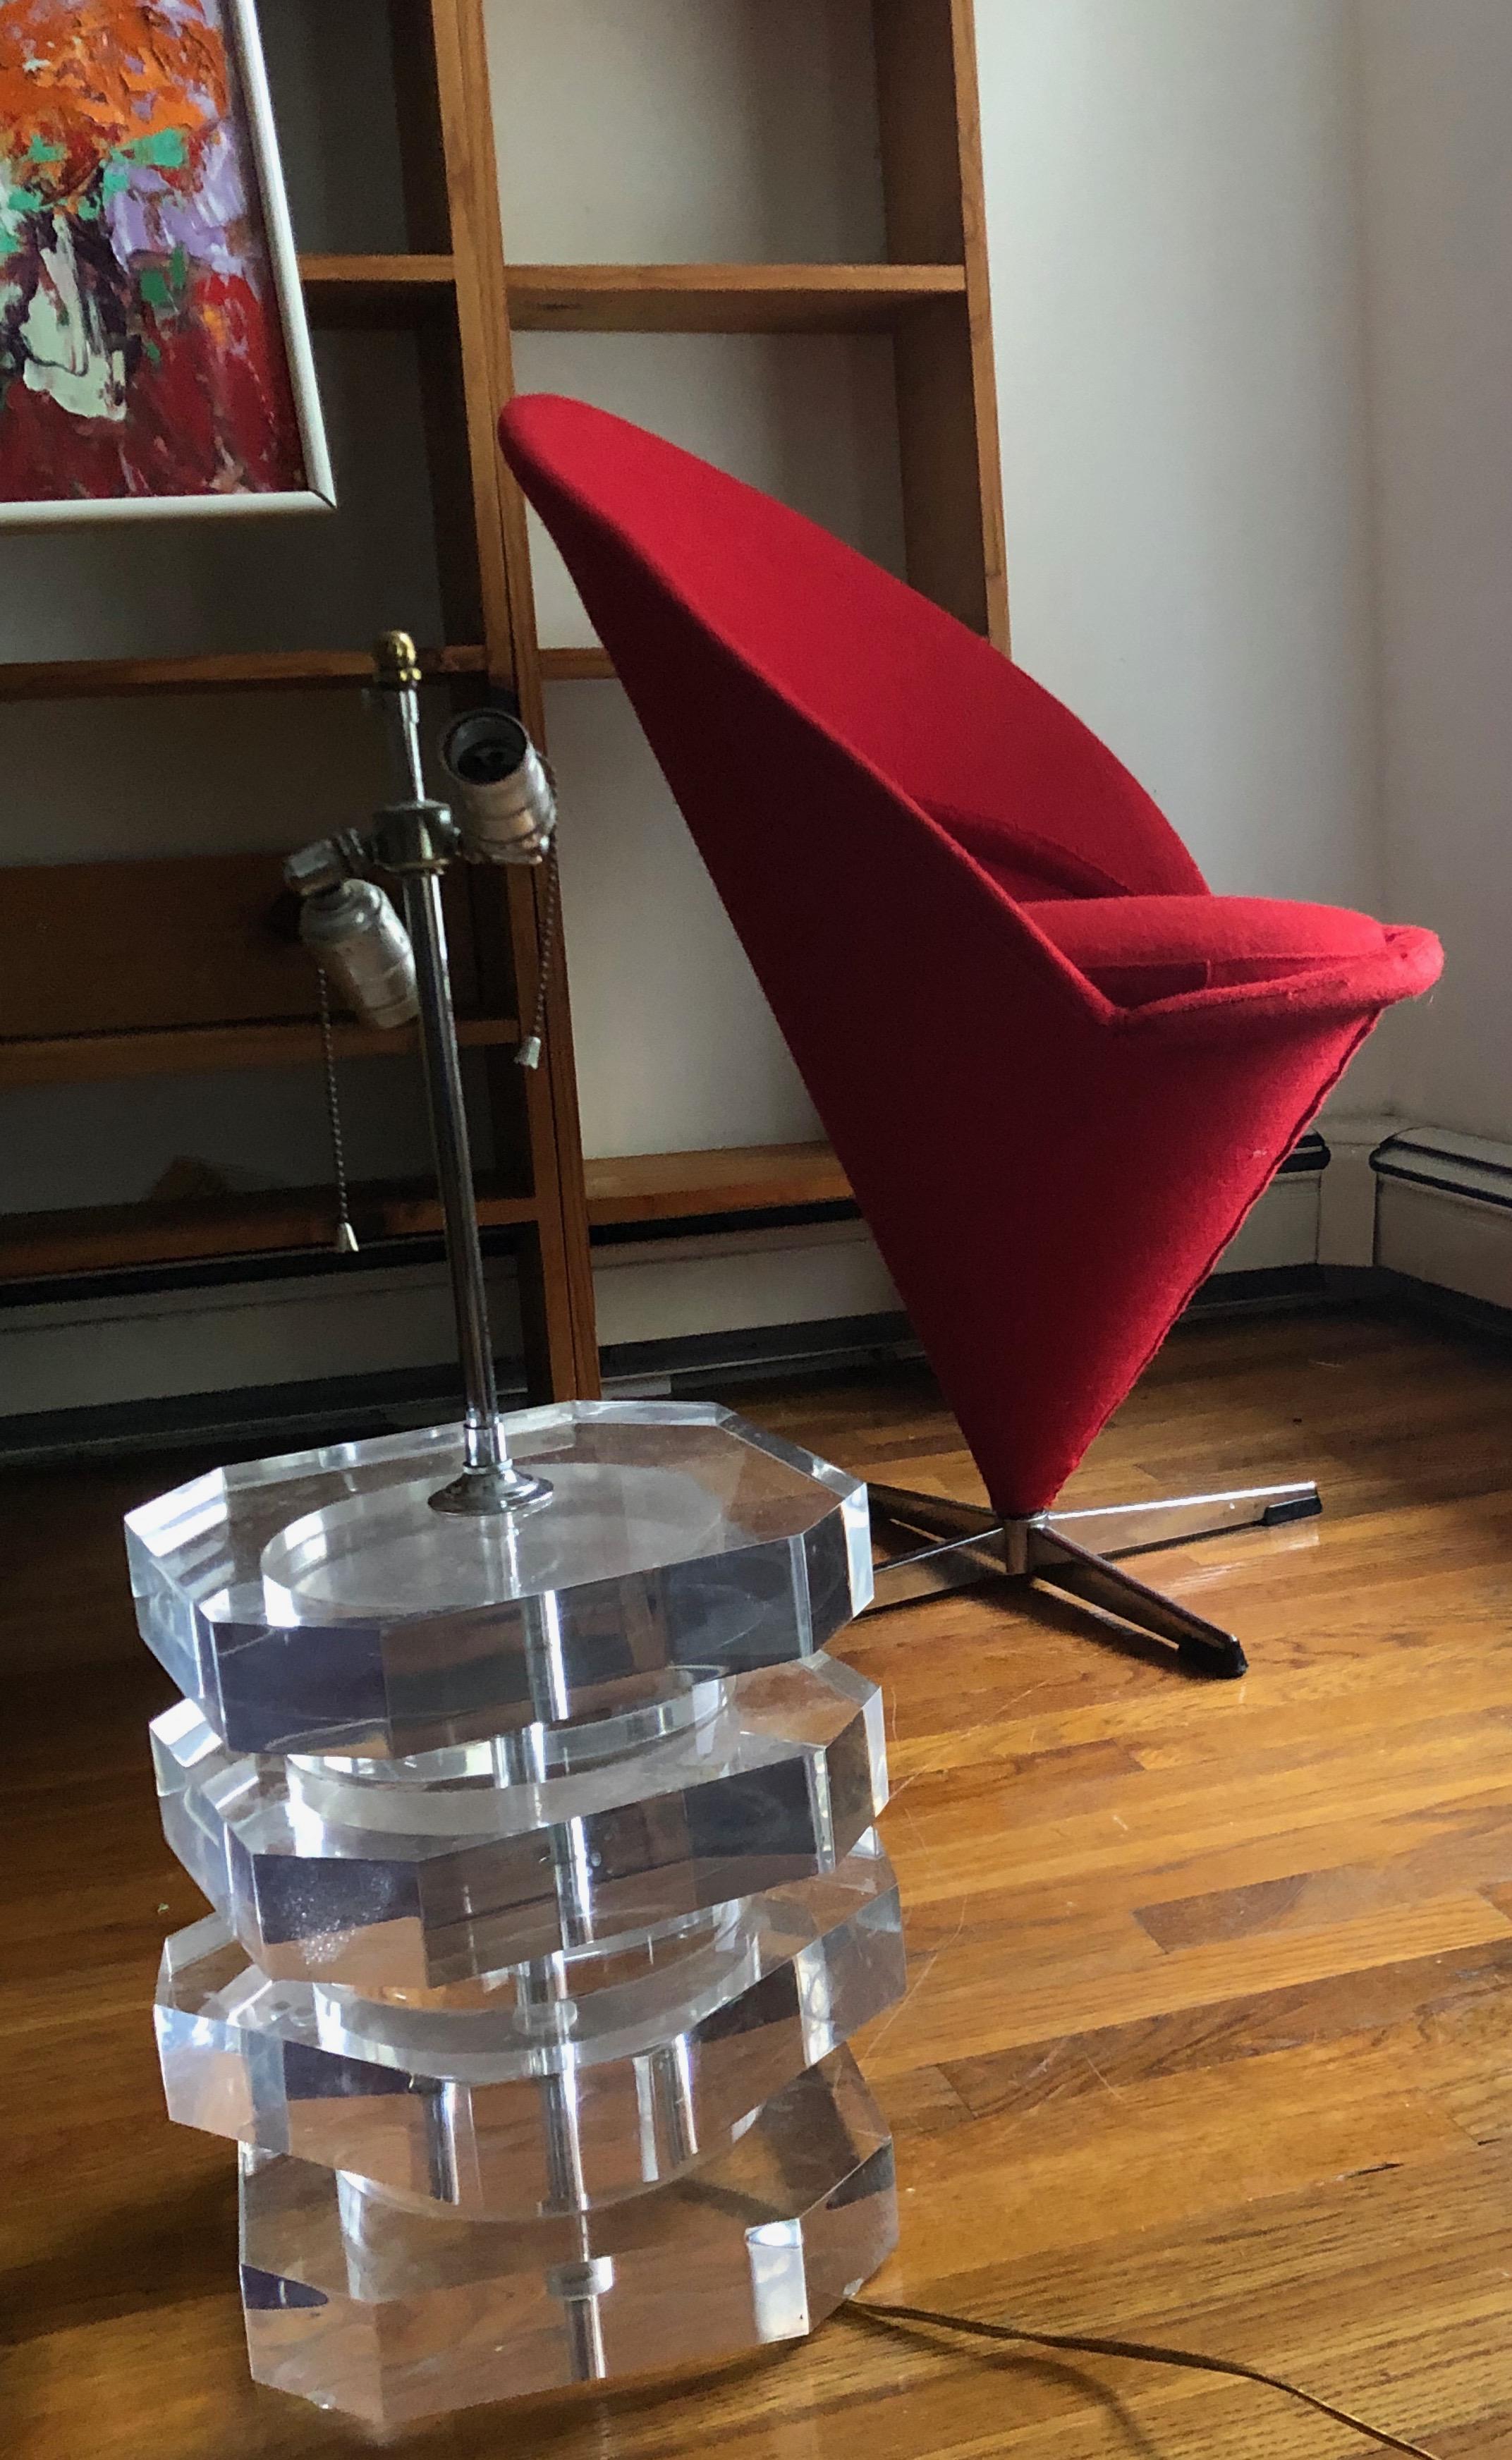 Space Age Verner Panton Cone Chair K1 in Cherry Red Wool, Original 1958, Wool Bouclé